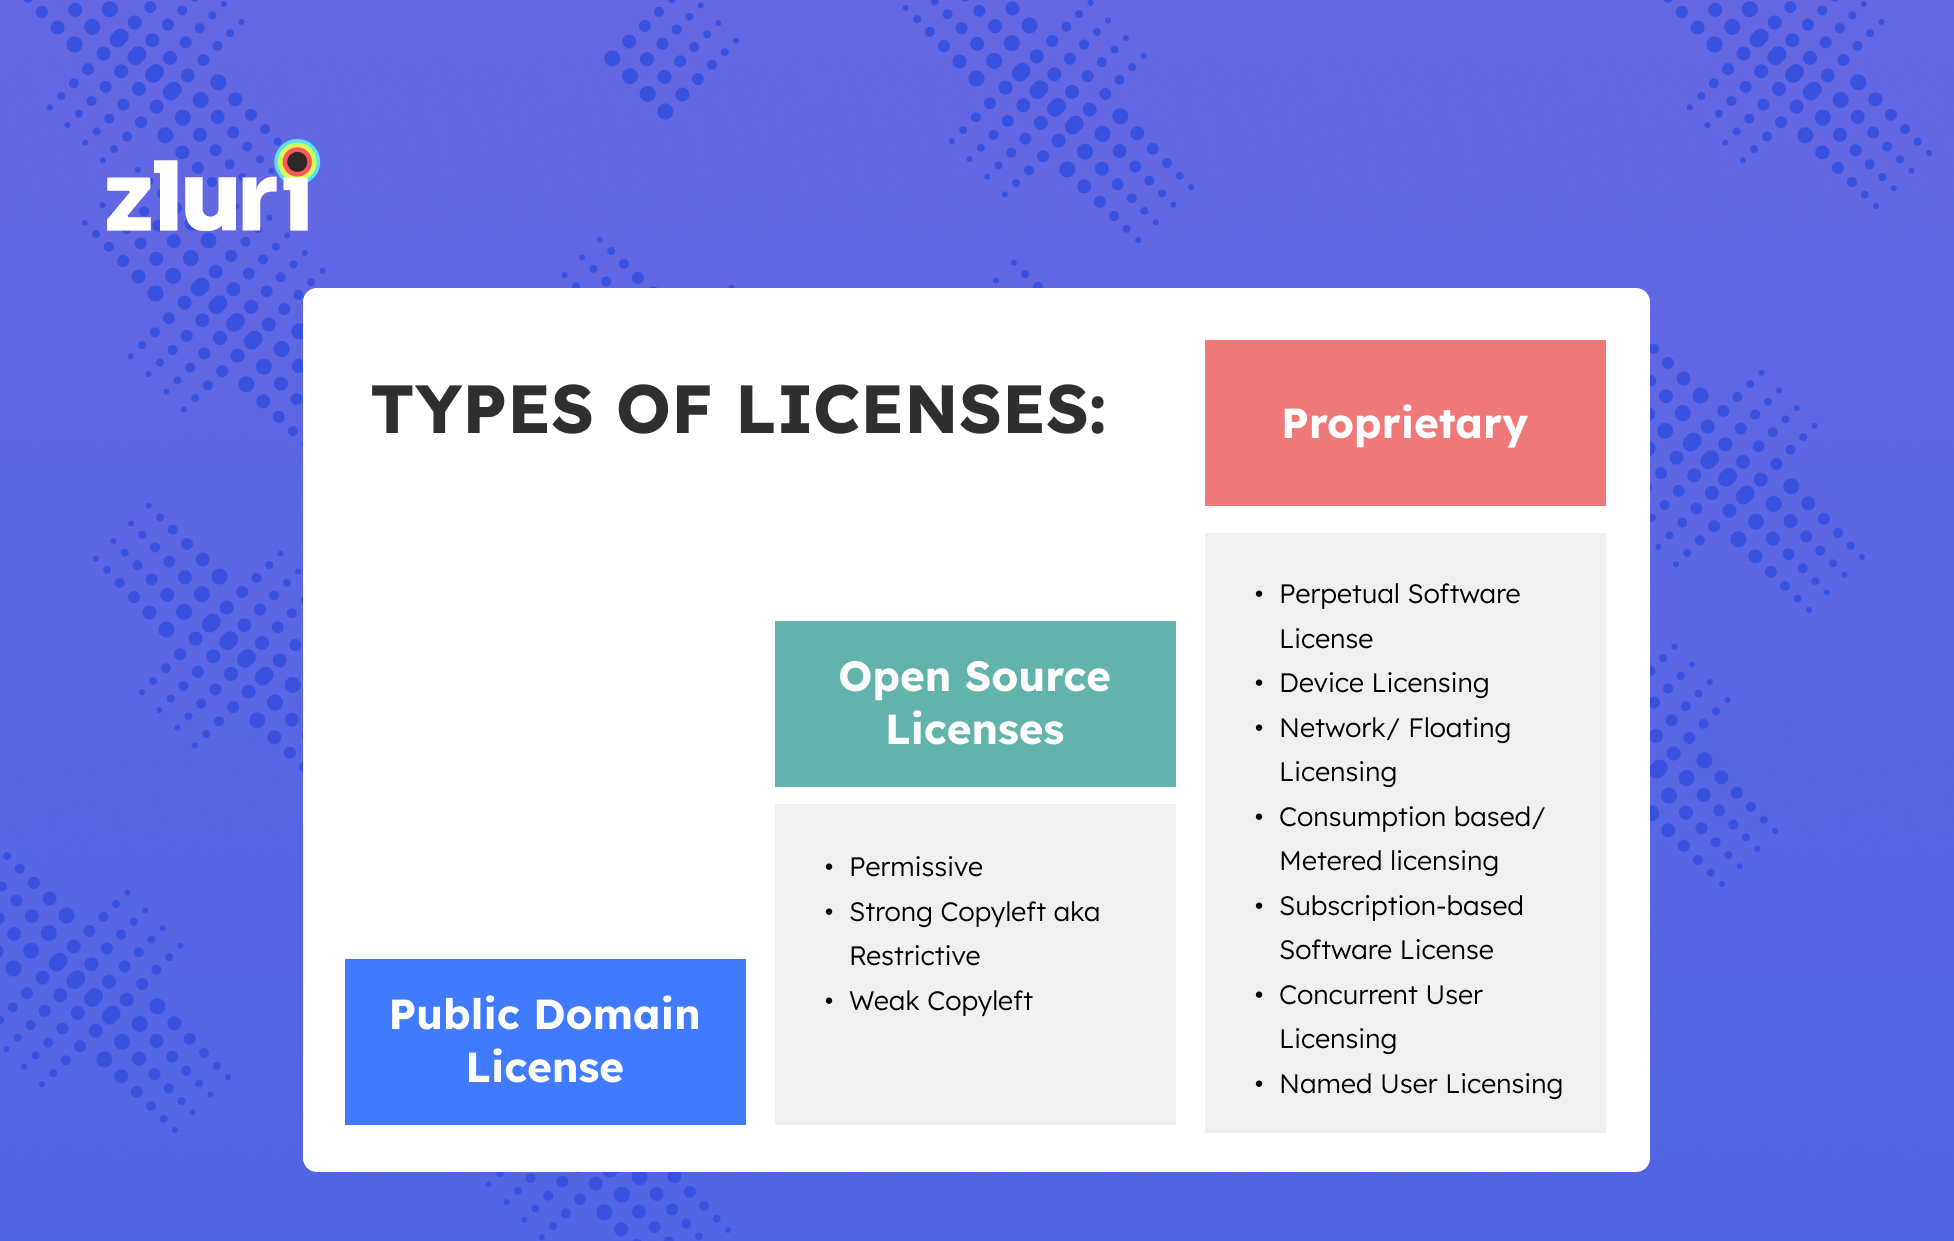 Public Domain License